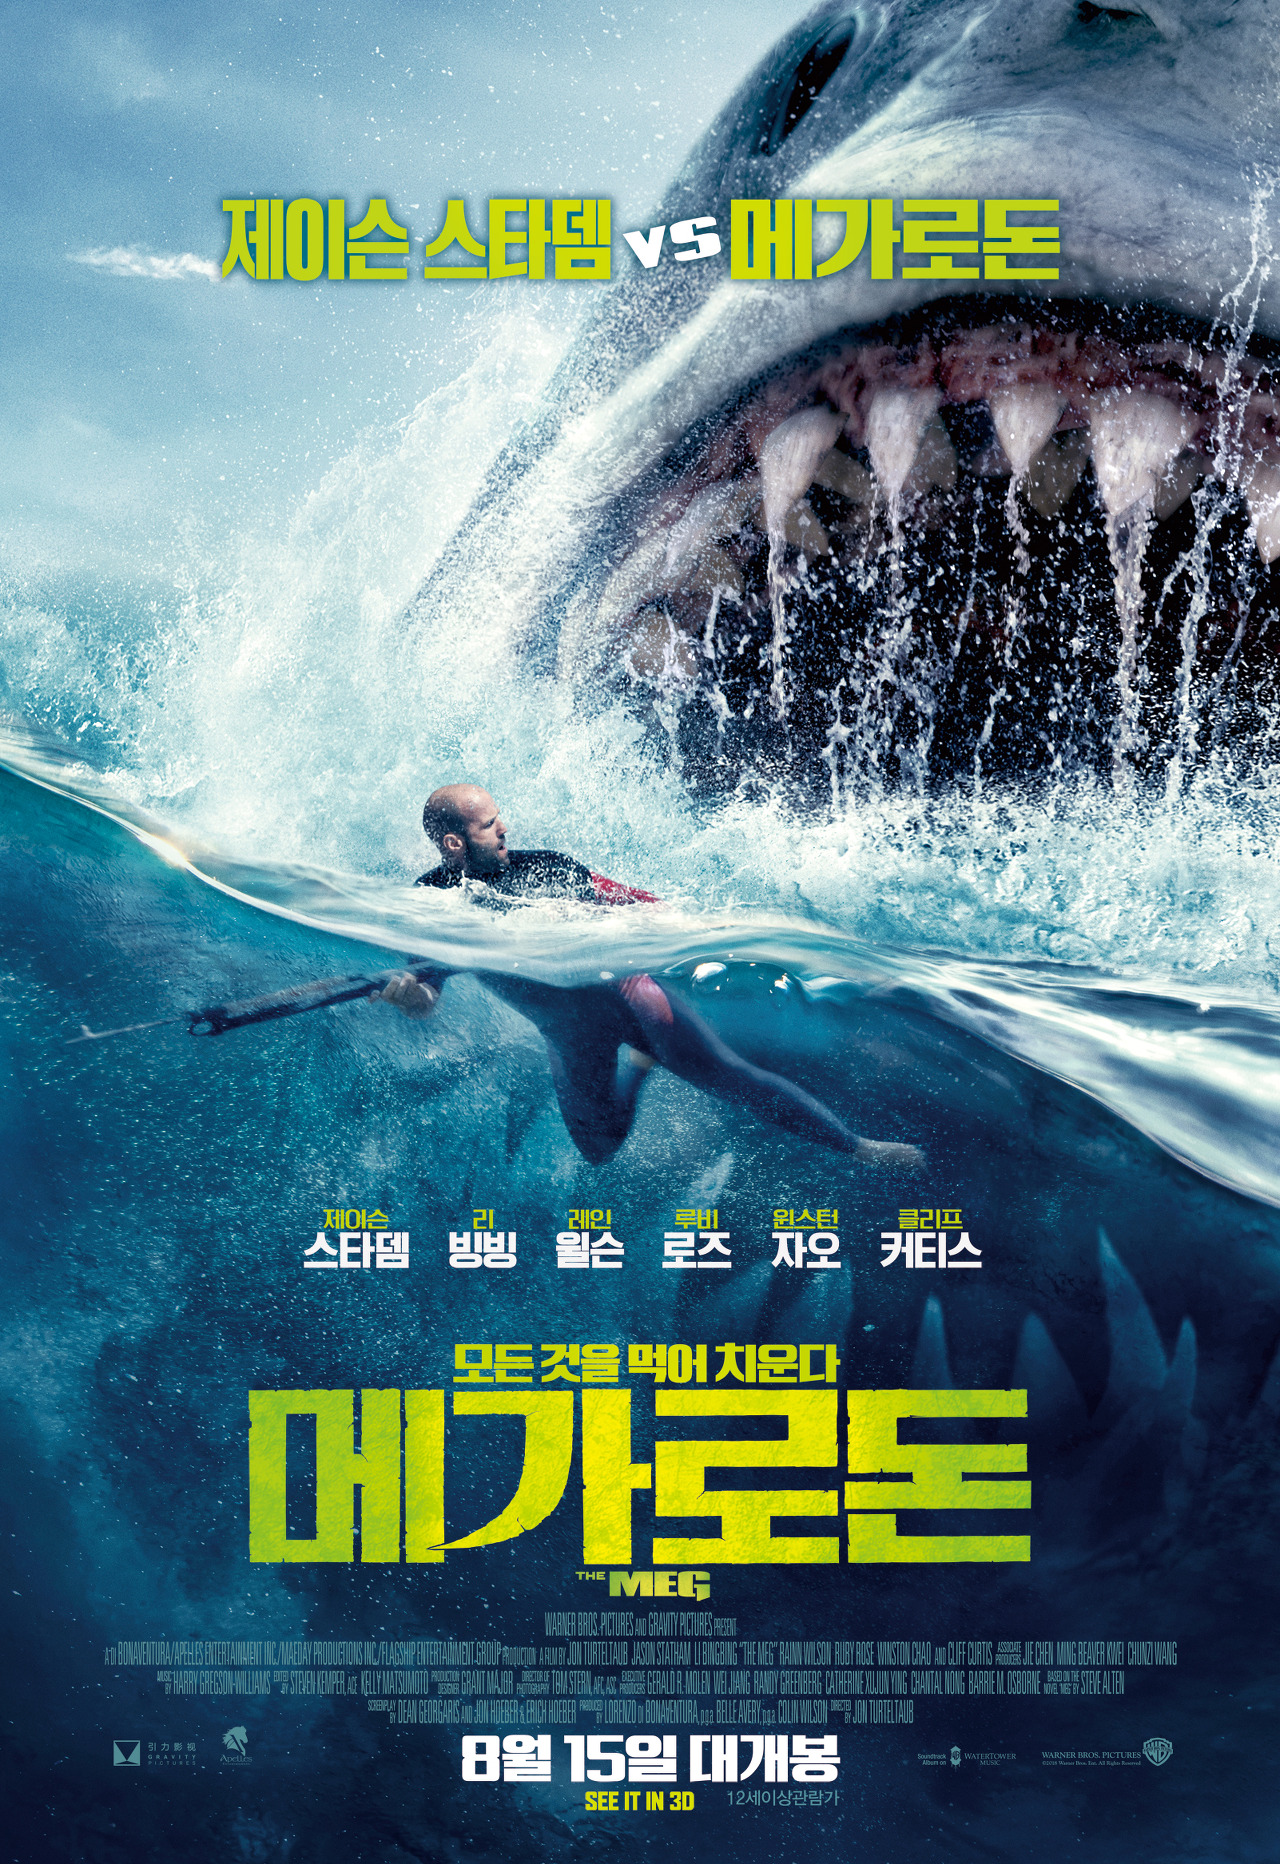 거대한 상어와 헤엄치고 있는 남자 주인공의 모습이 있는 영화 메가로돈 포스터.